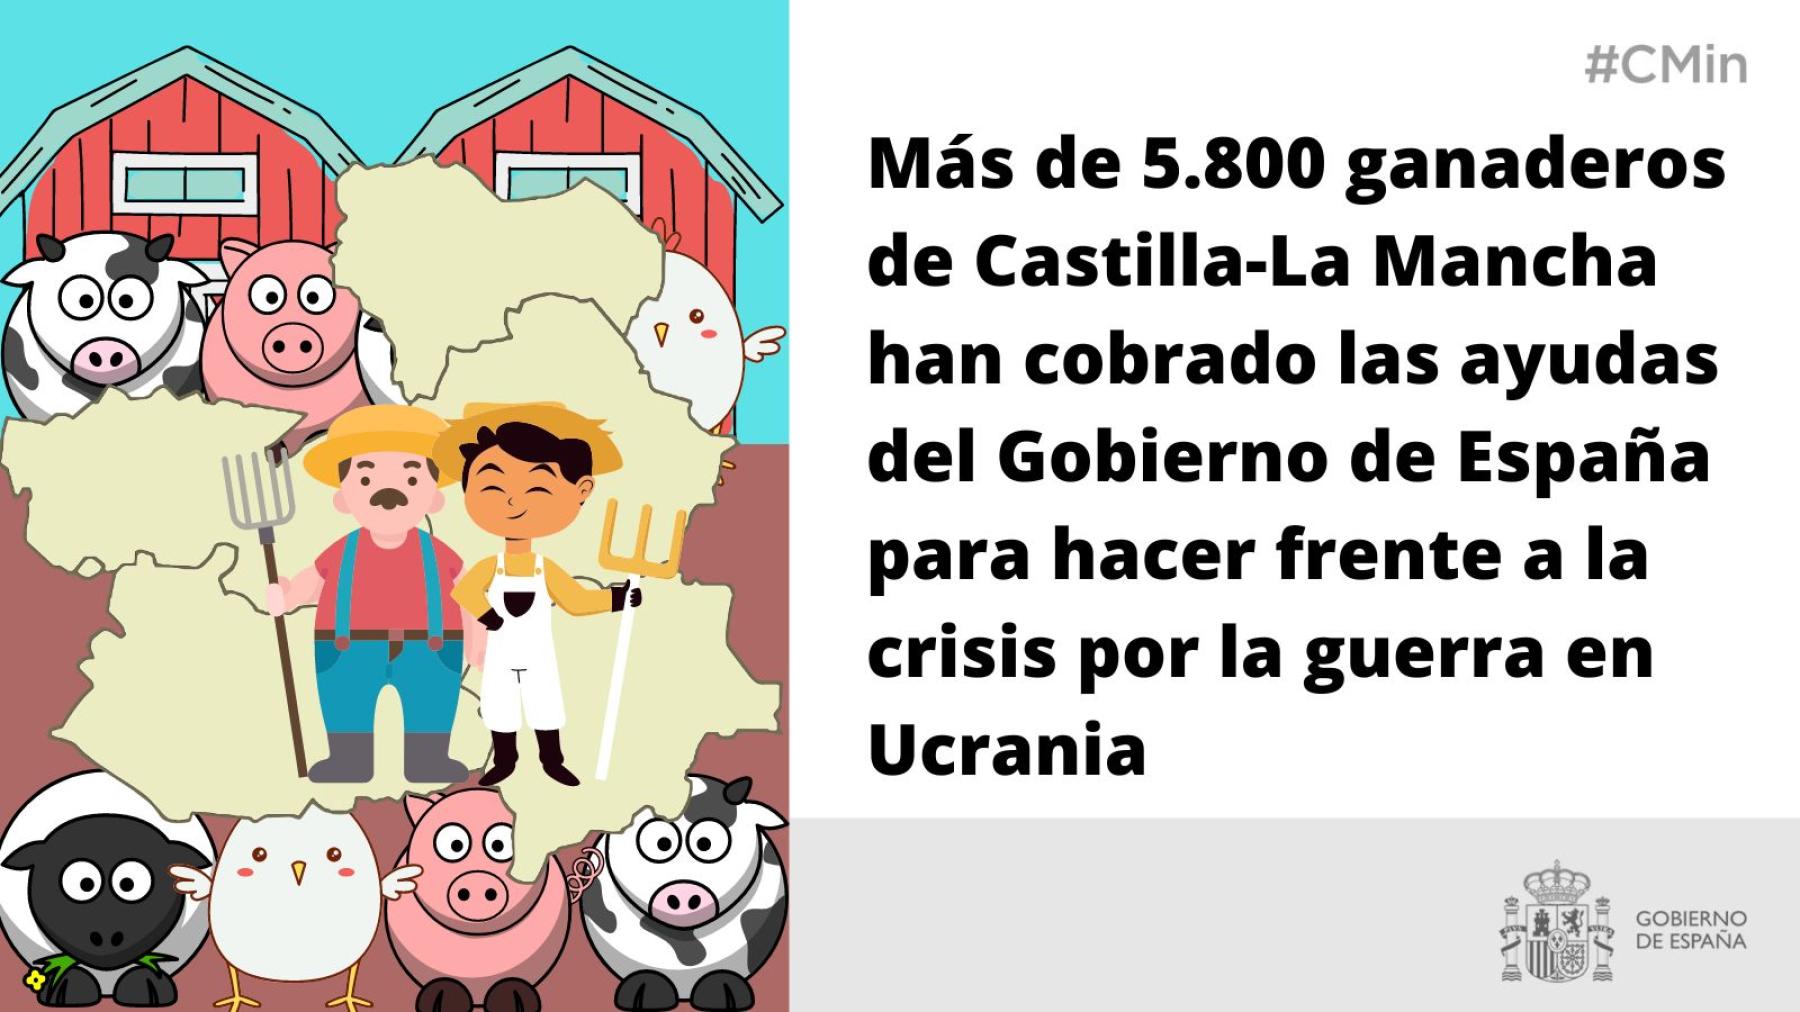 Más de 5.800 ganaderos de Castilla-La Mancha han cobrado las ayudas del Gobierno de España para hacer frente a la crisis por la guerra en Ucrania